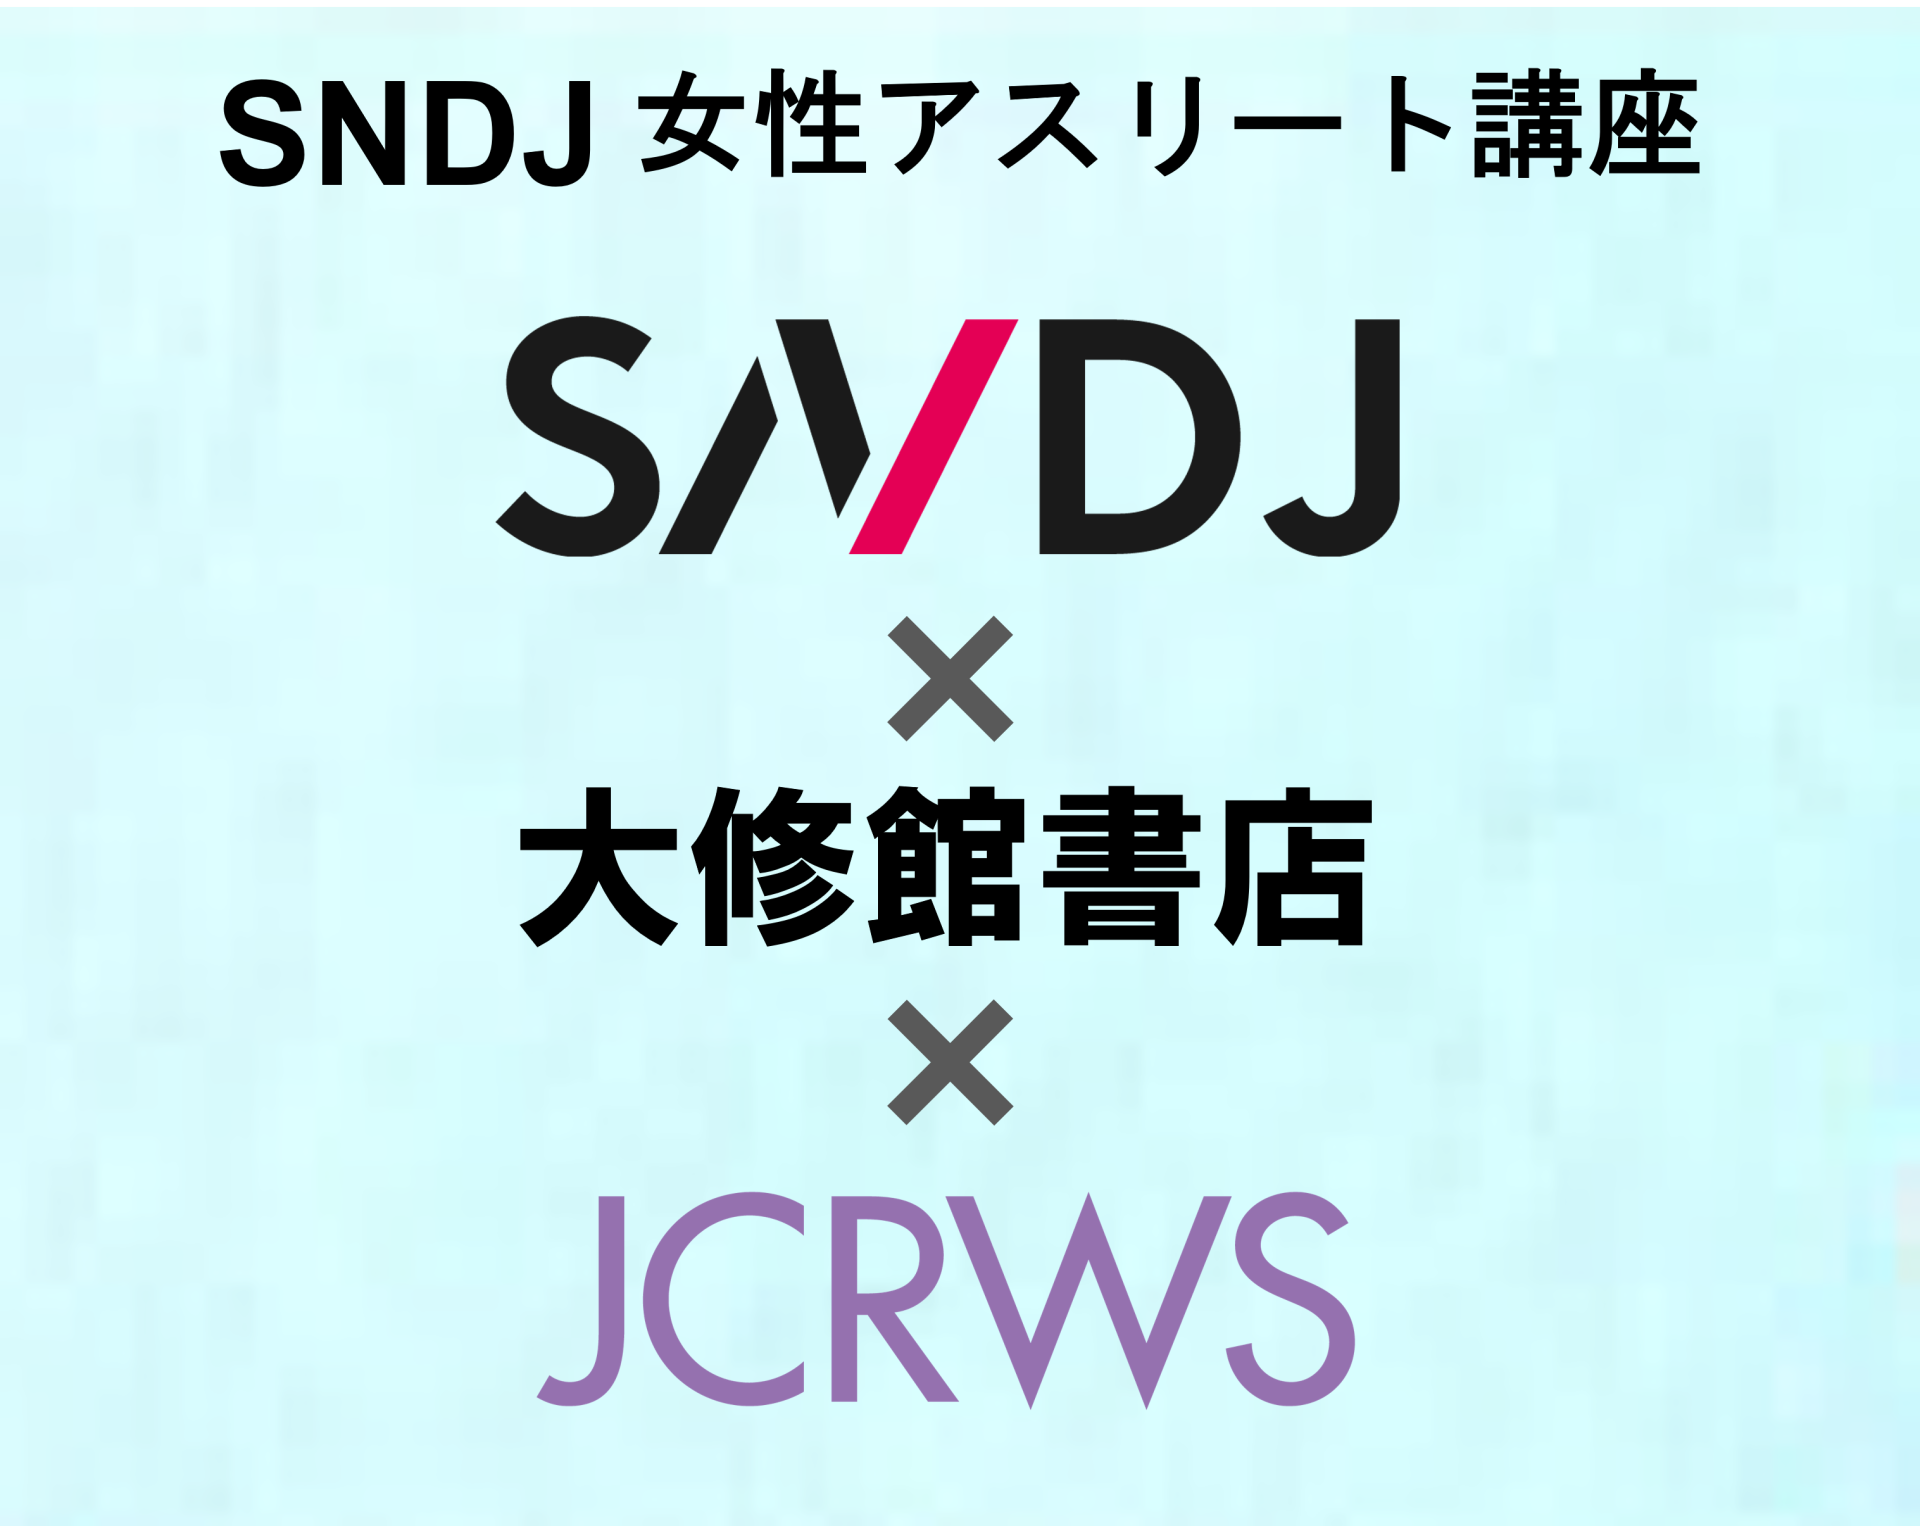 4月24日「女子アスリートの“強いカラダ”づくり」をテーマに、日本スポーツ栄養協会×大修館書店×JCRWS共催セミナーを開催